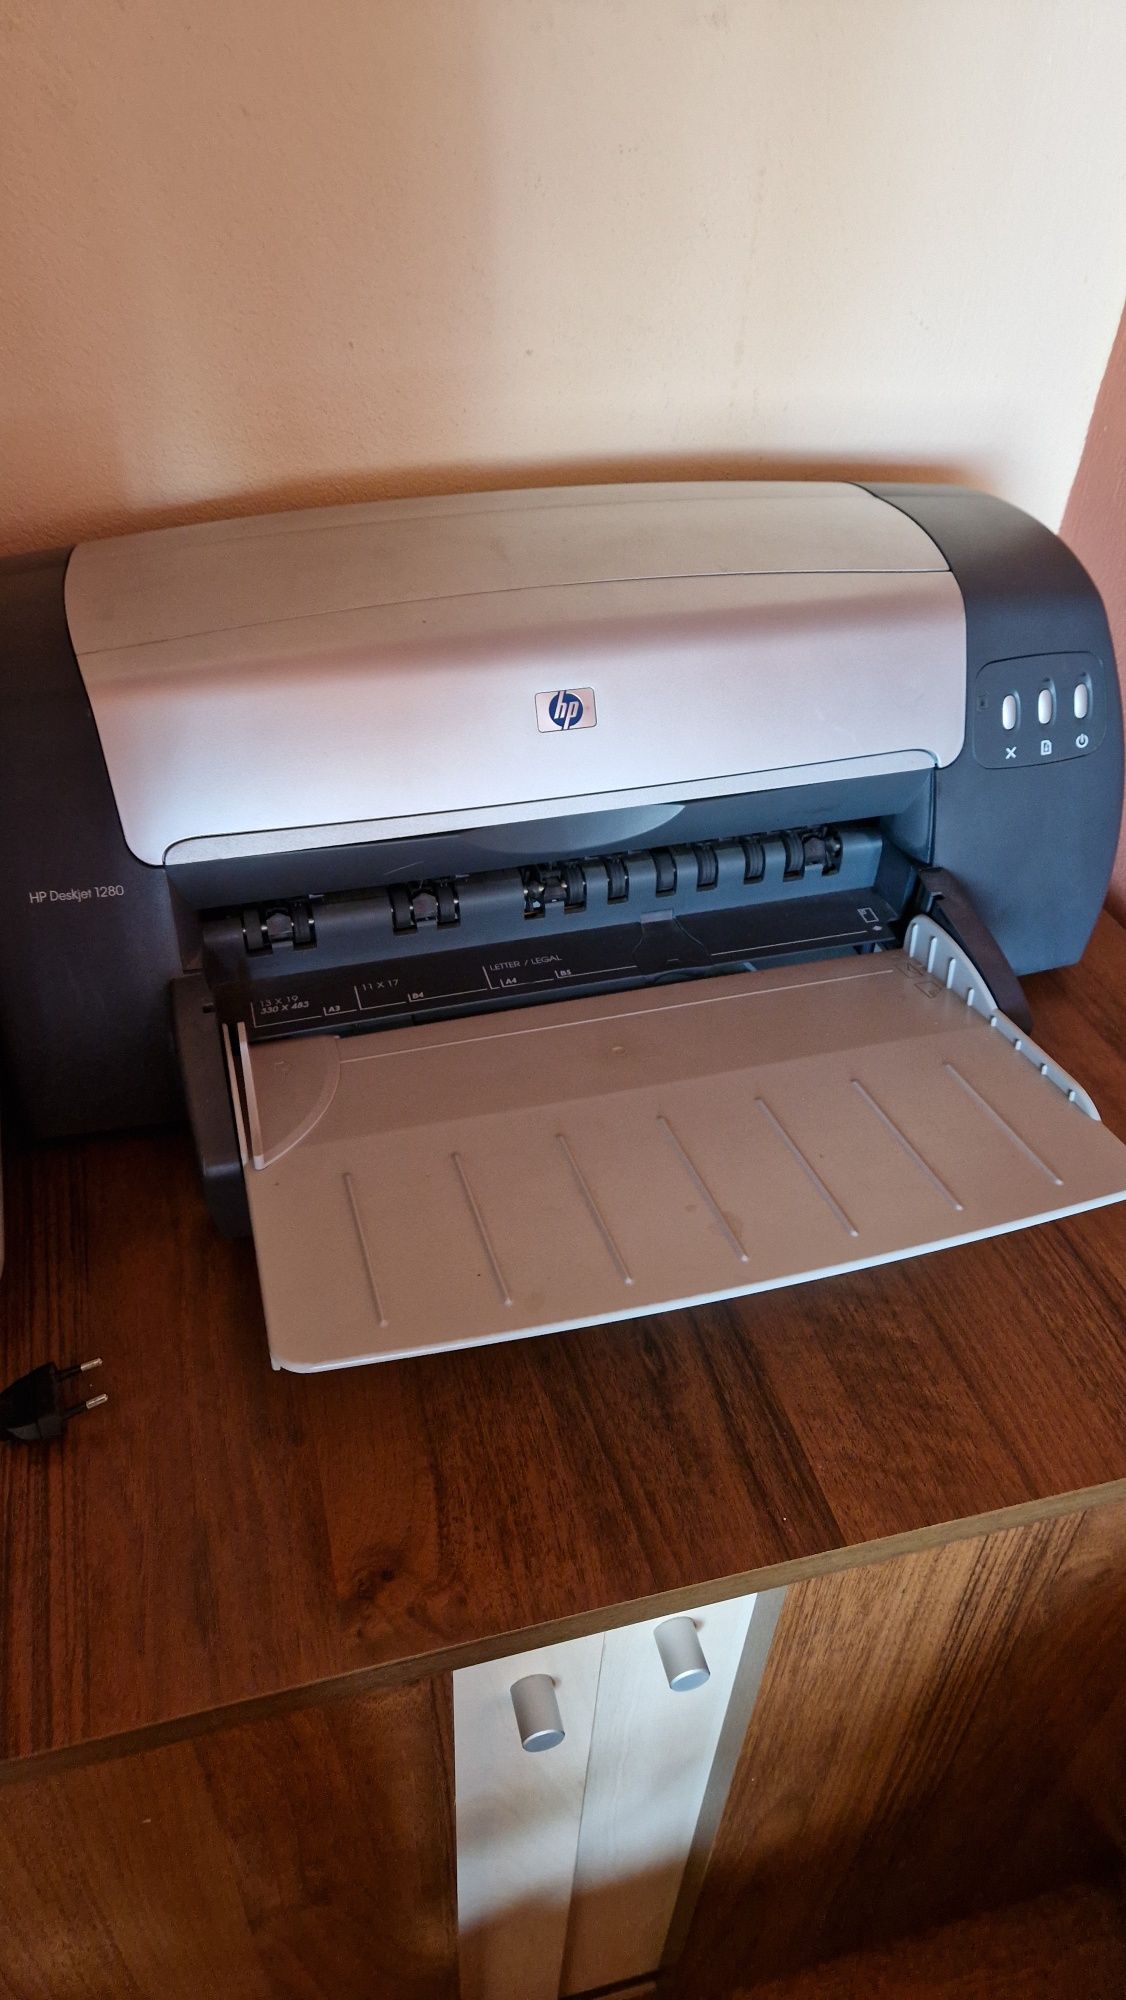 Imprimanta A3 A4 HP Deskjet 1280